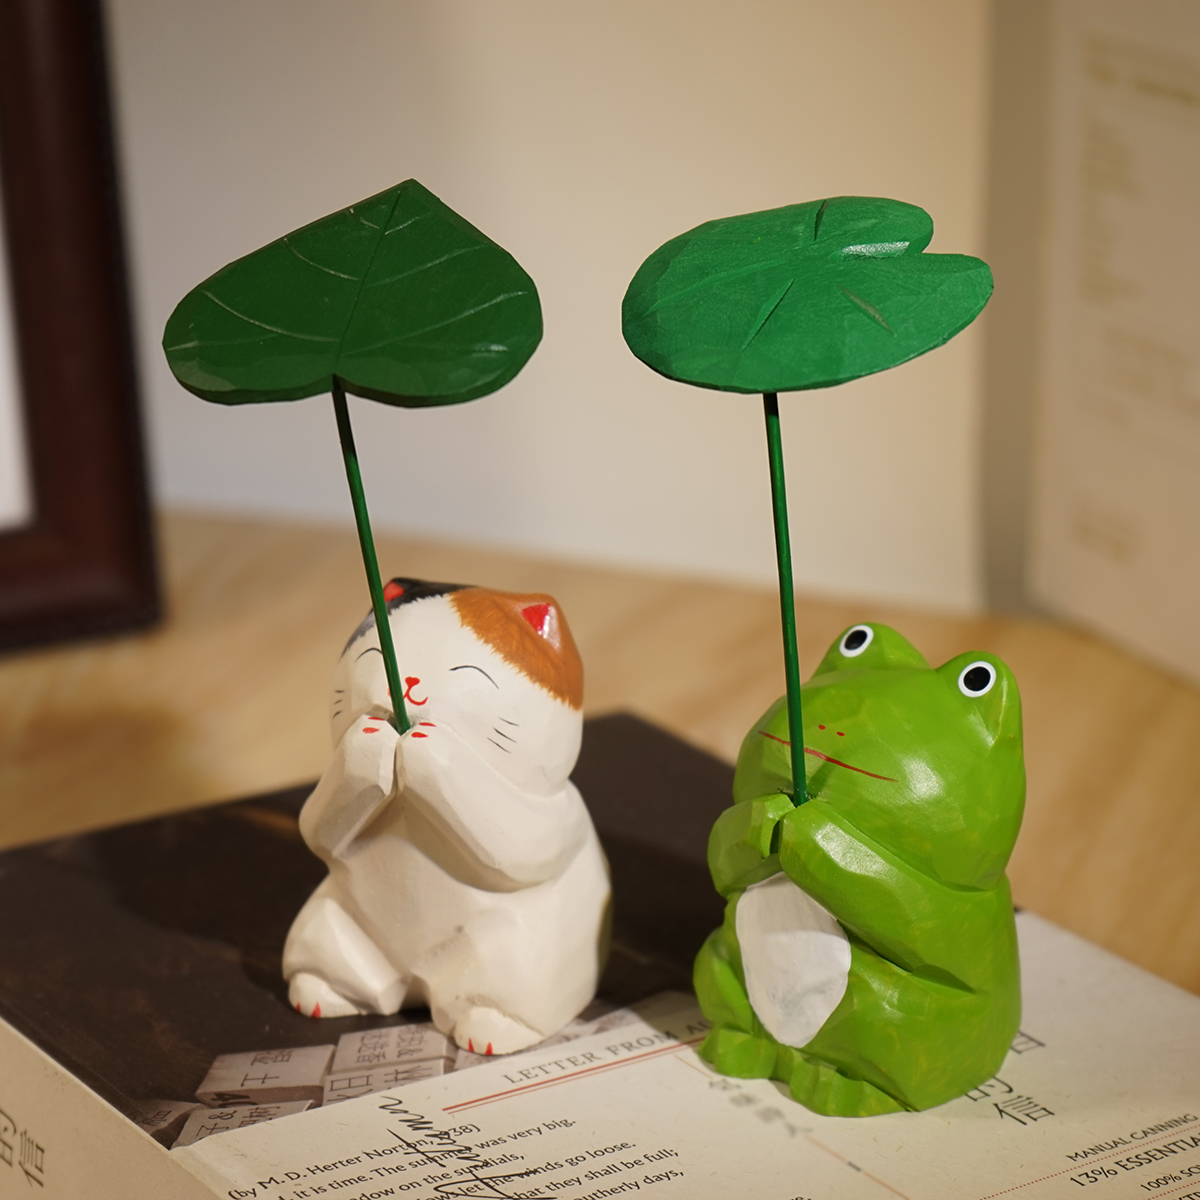 《祈福》手工木雕青蛙树叶猫咪动物治愈系桌面装饰木头小摆件礼物